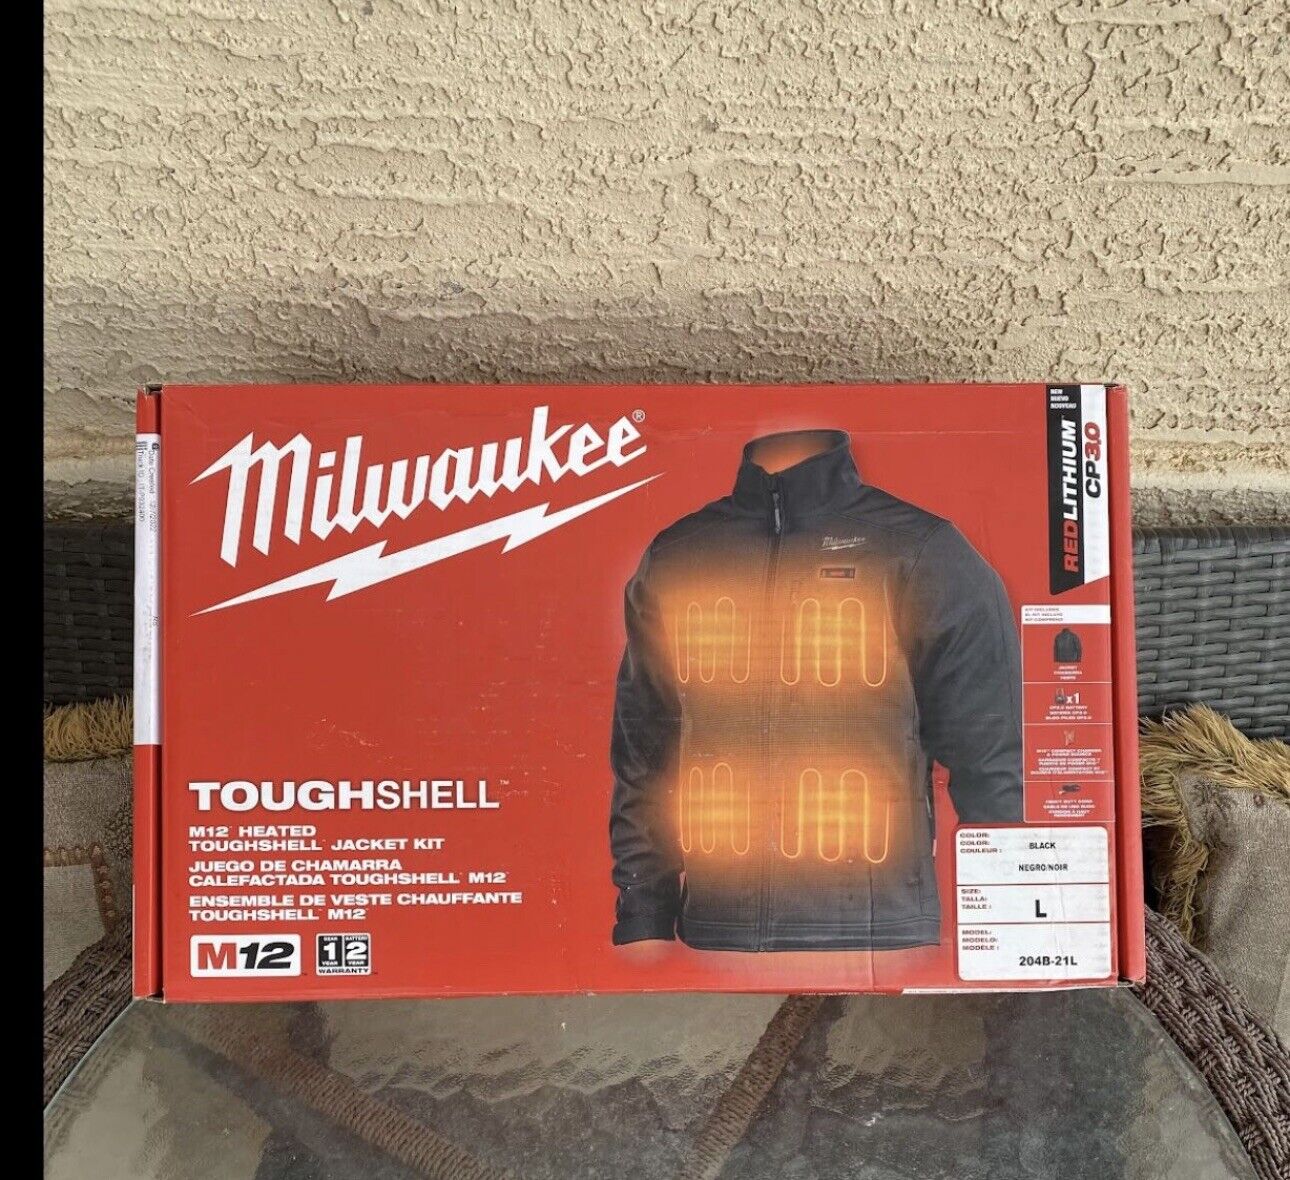 Milwaukee 204B-21L M12 12V Heated Toughshell Jacket Kit Black LG, VG KIT